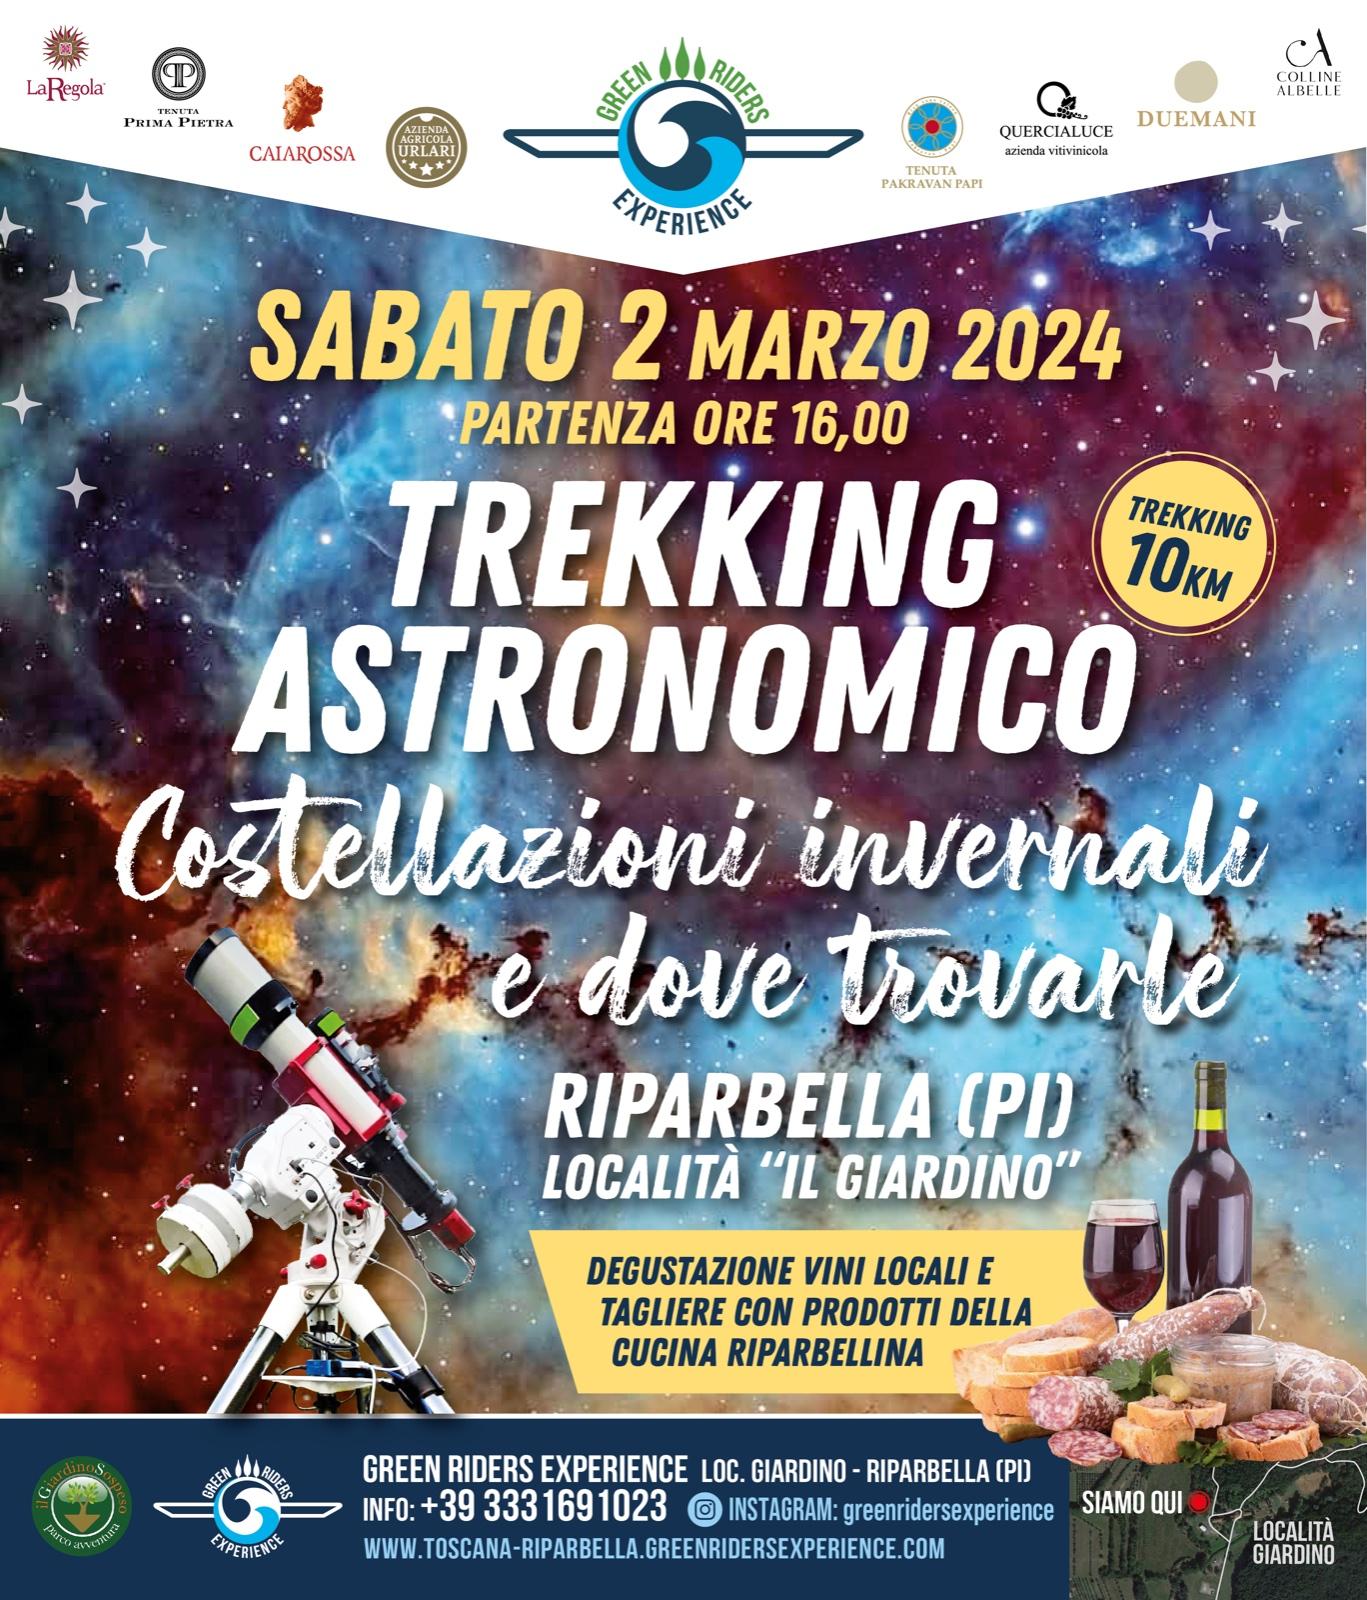 TREKKING ASTRONOMICO SABATO 2 MARZO 2024 "COSTELLAZIONI INVERNALI E DOVE TROVARLE"